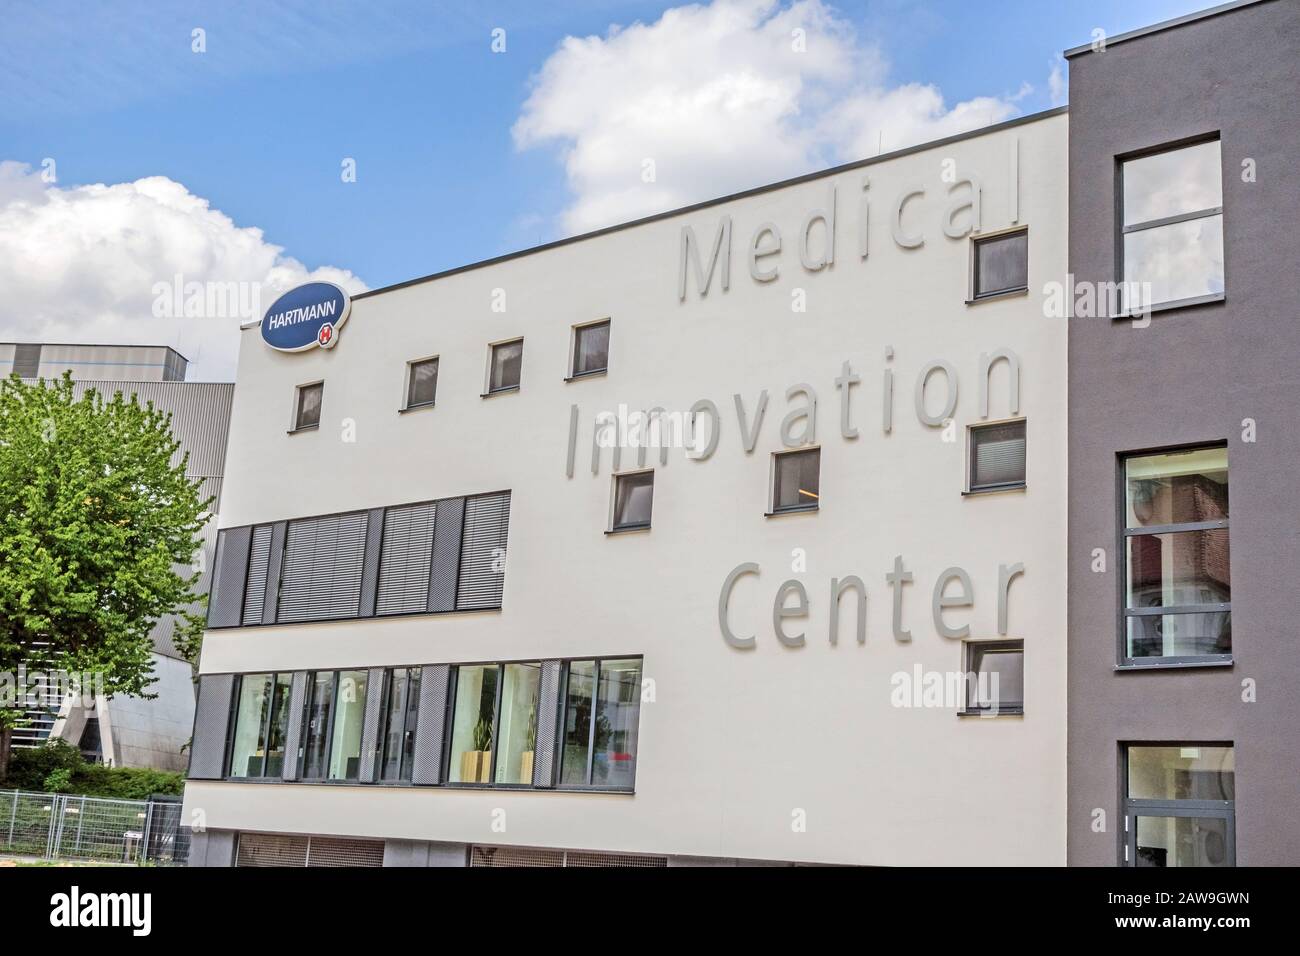 Heidenheim, Germania - 26 maggio 2016: Medical Innovation Centerof Hartmann AG, una società operativa internazionale tedesca che produce produ medico e sanitario Foto Stock